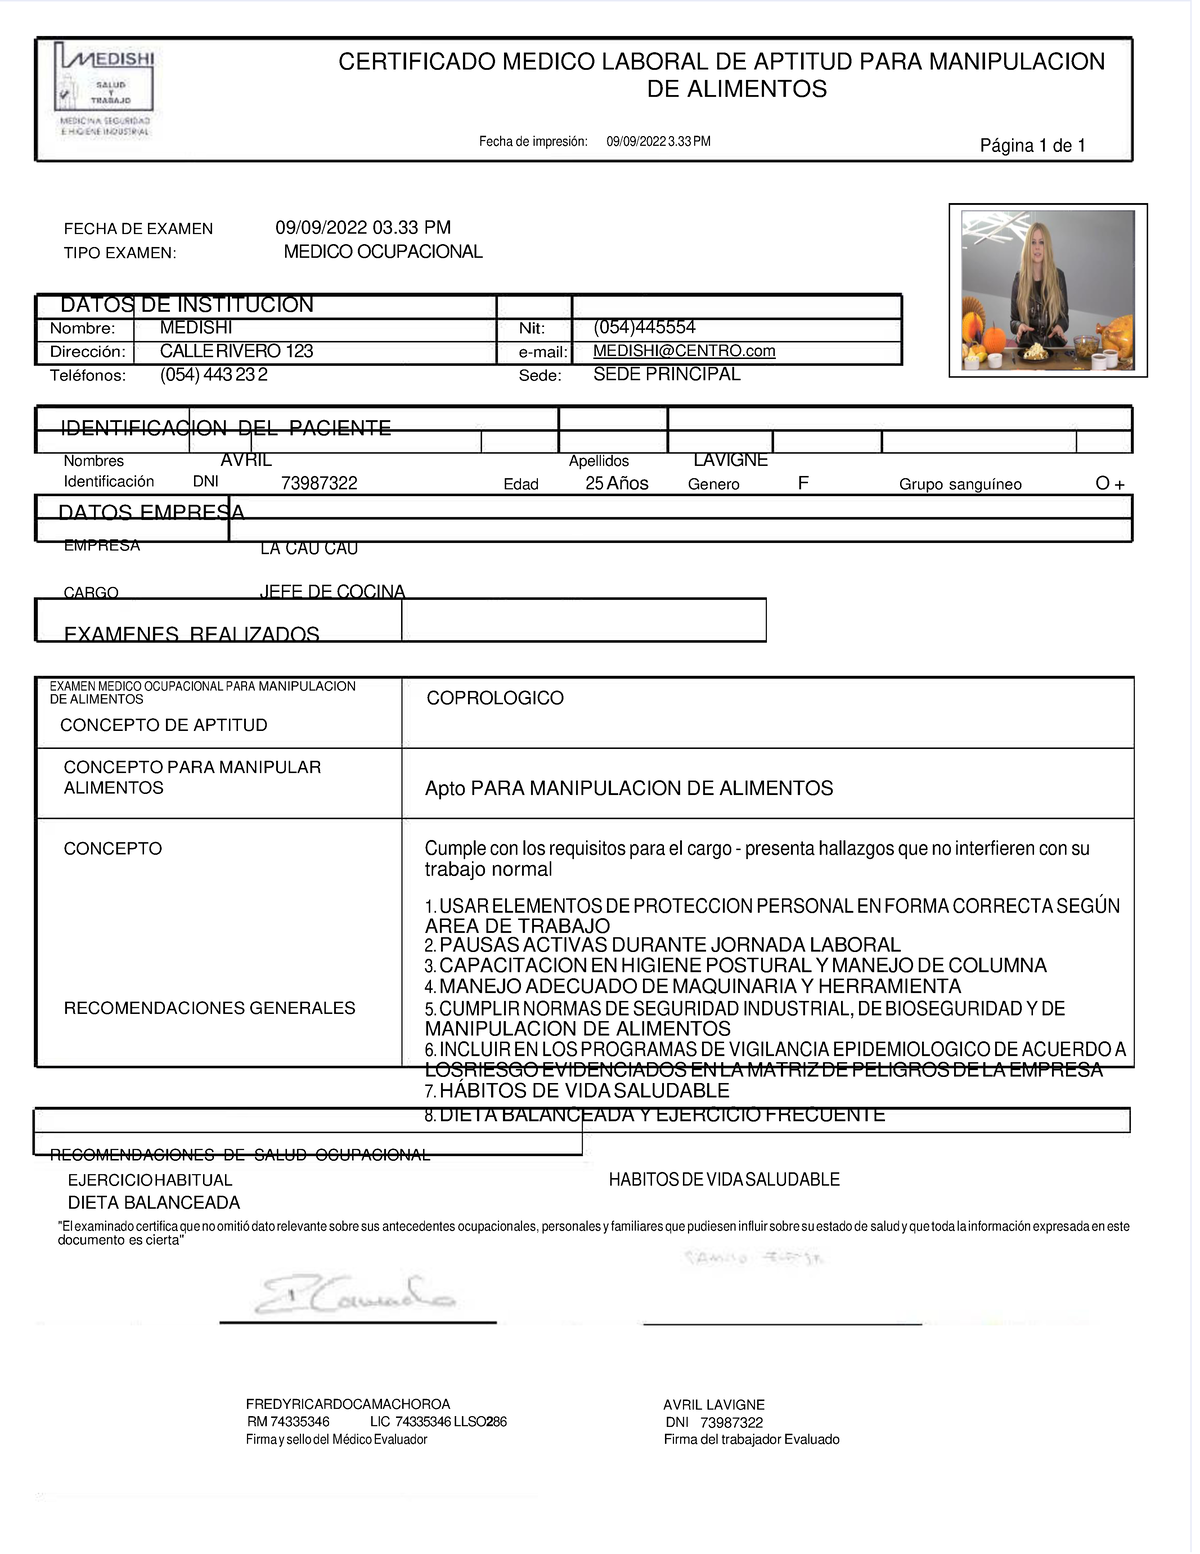 Certificado Medico Laboral DE Aptitud PARA Manipulacion DE Alimentos CERTIFICADO MEDICO